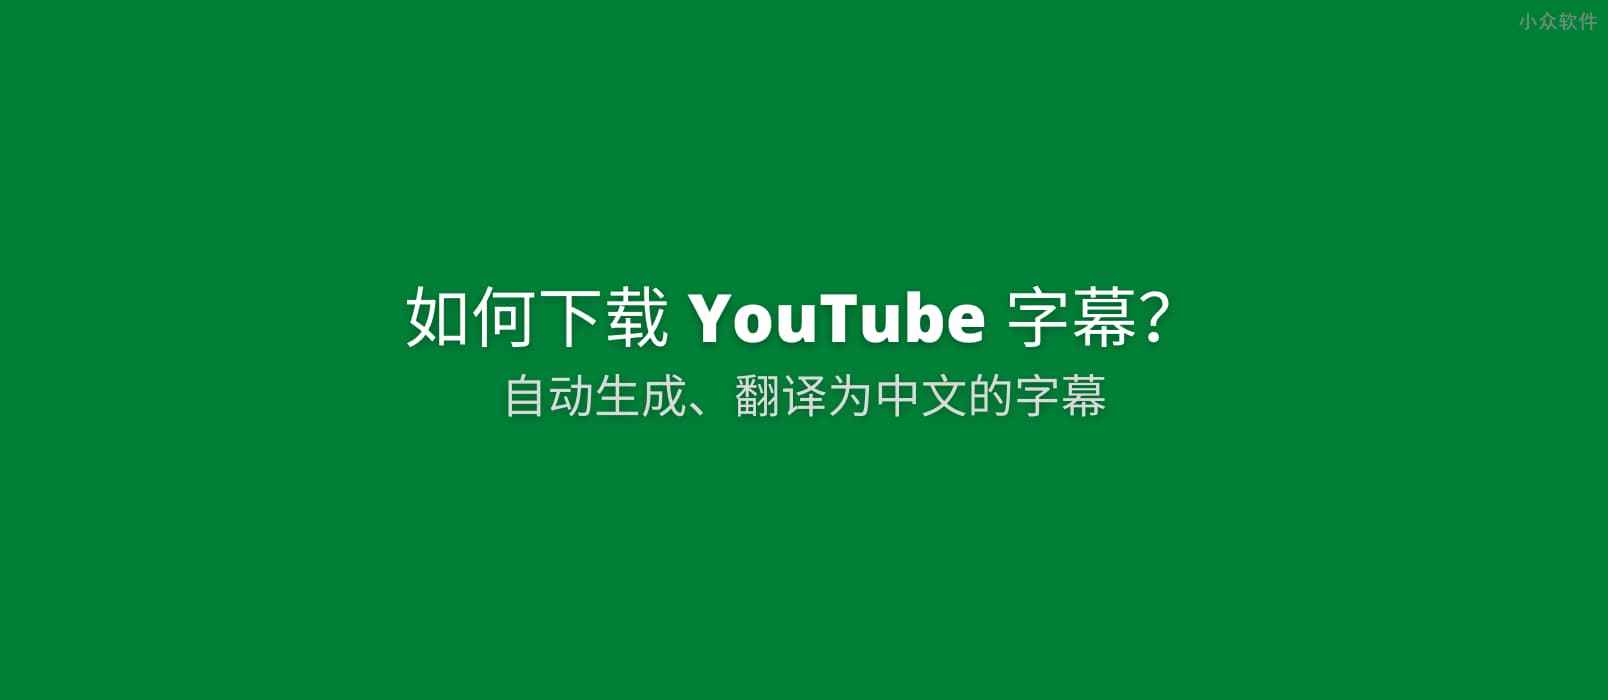 如何下载 YouTube 为视频自动生成并翻译为中文的字幕文件[Chrome]